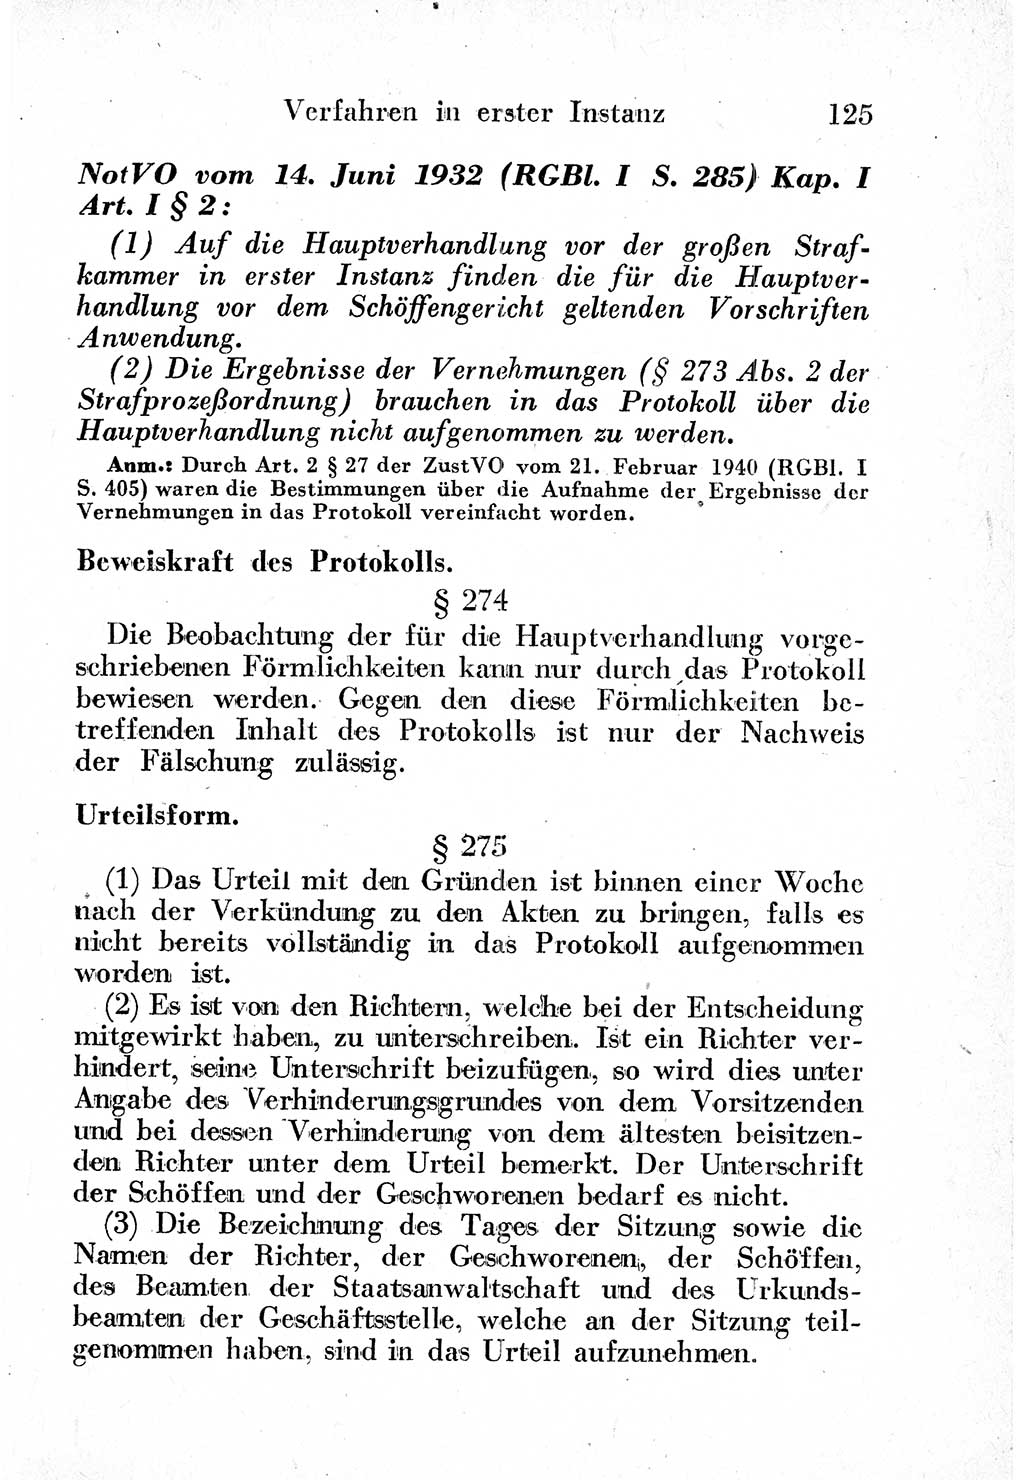 Strafprozeßordnung (StPO), Gerichtsverfassungsgesetz (GVG) und zahlreiche Nebengesetze der sowjetischen Besatzungszone (SBZ) in Deutschland 1949, Seite 125 (StPO GVG Ges. SBZ Dtl. 1949, S. 125)